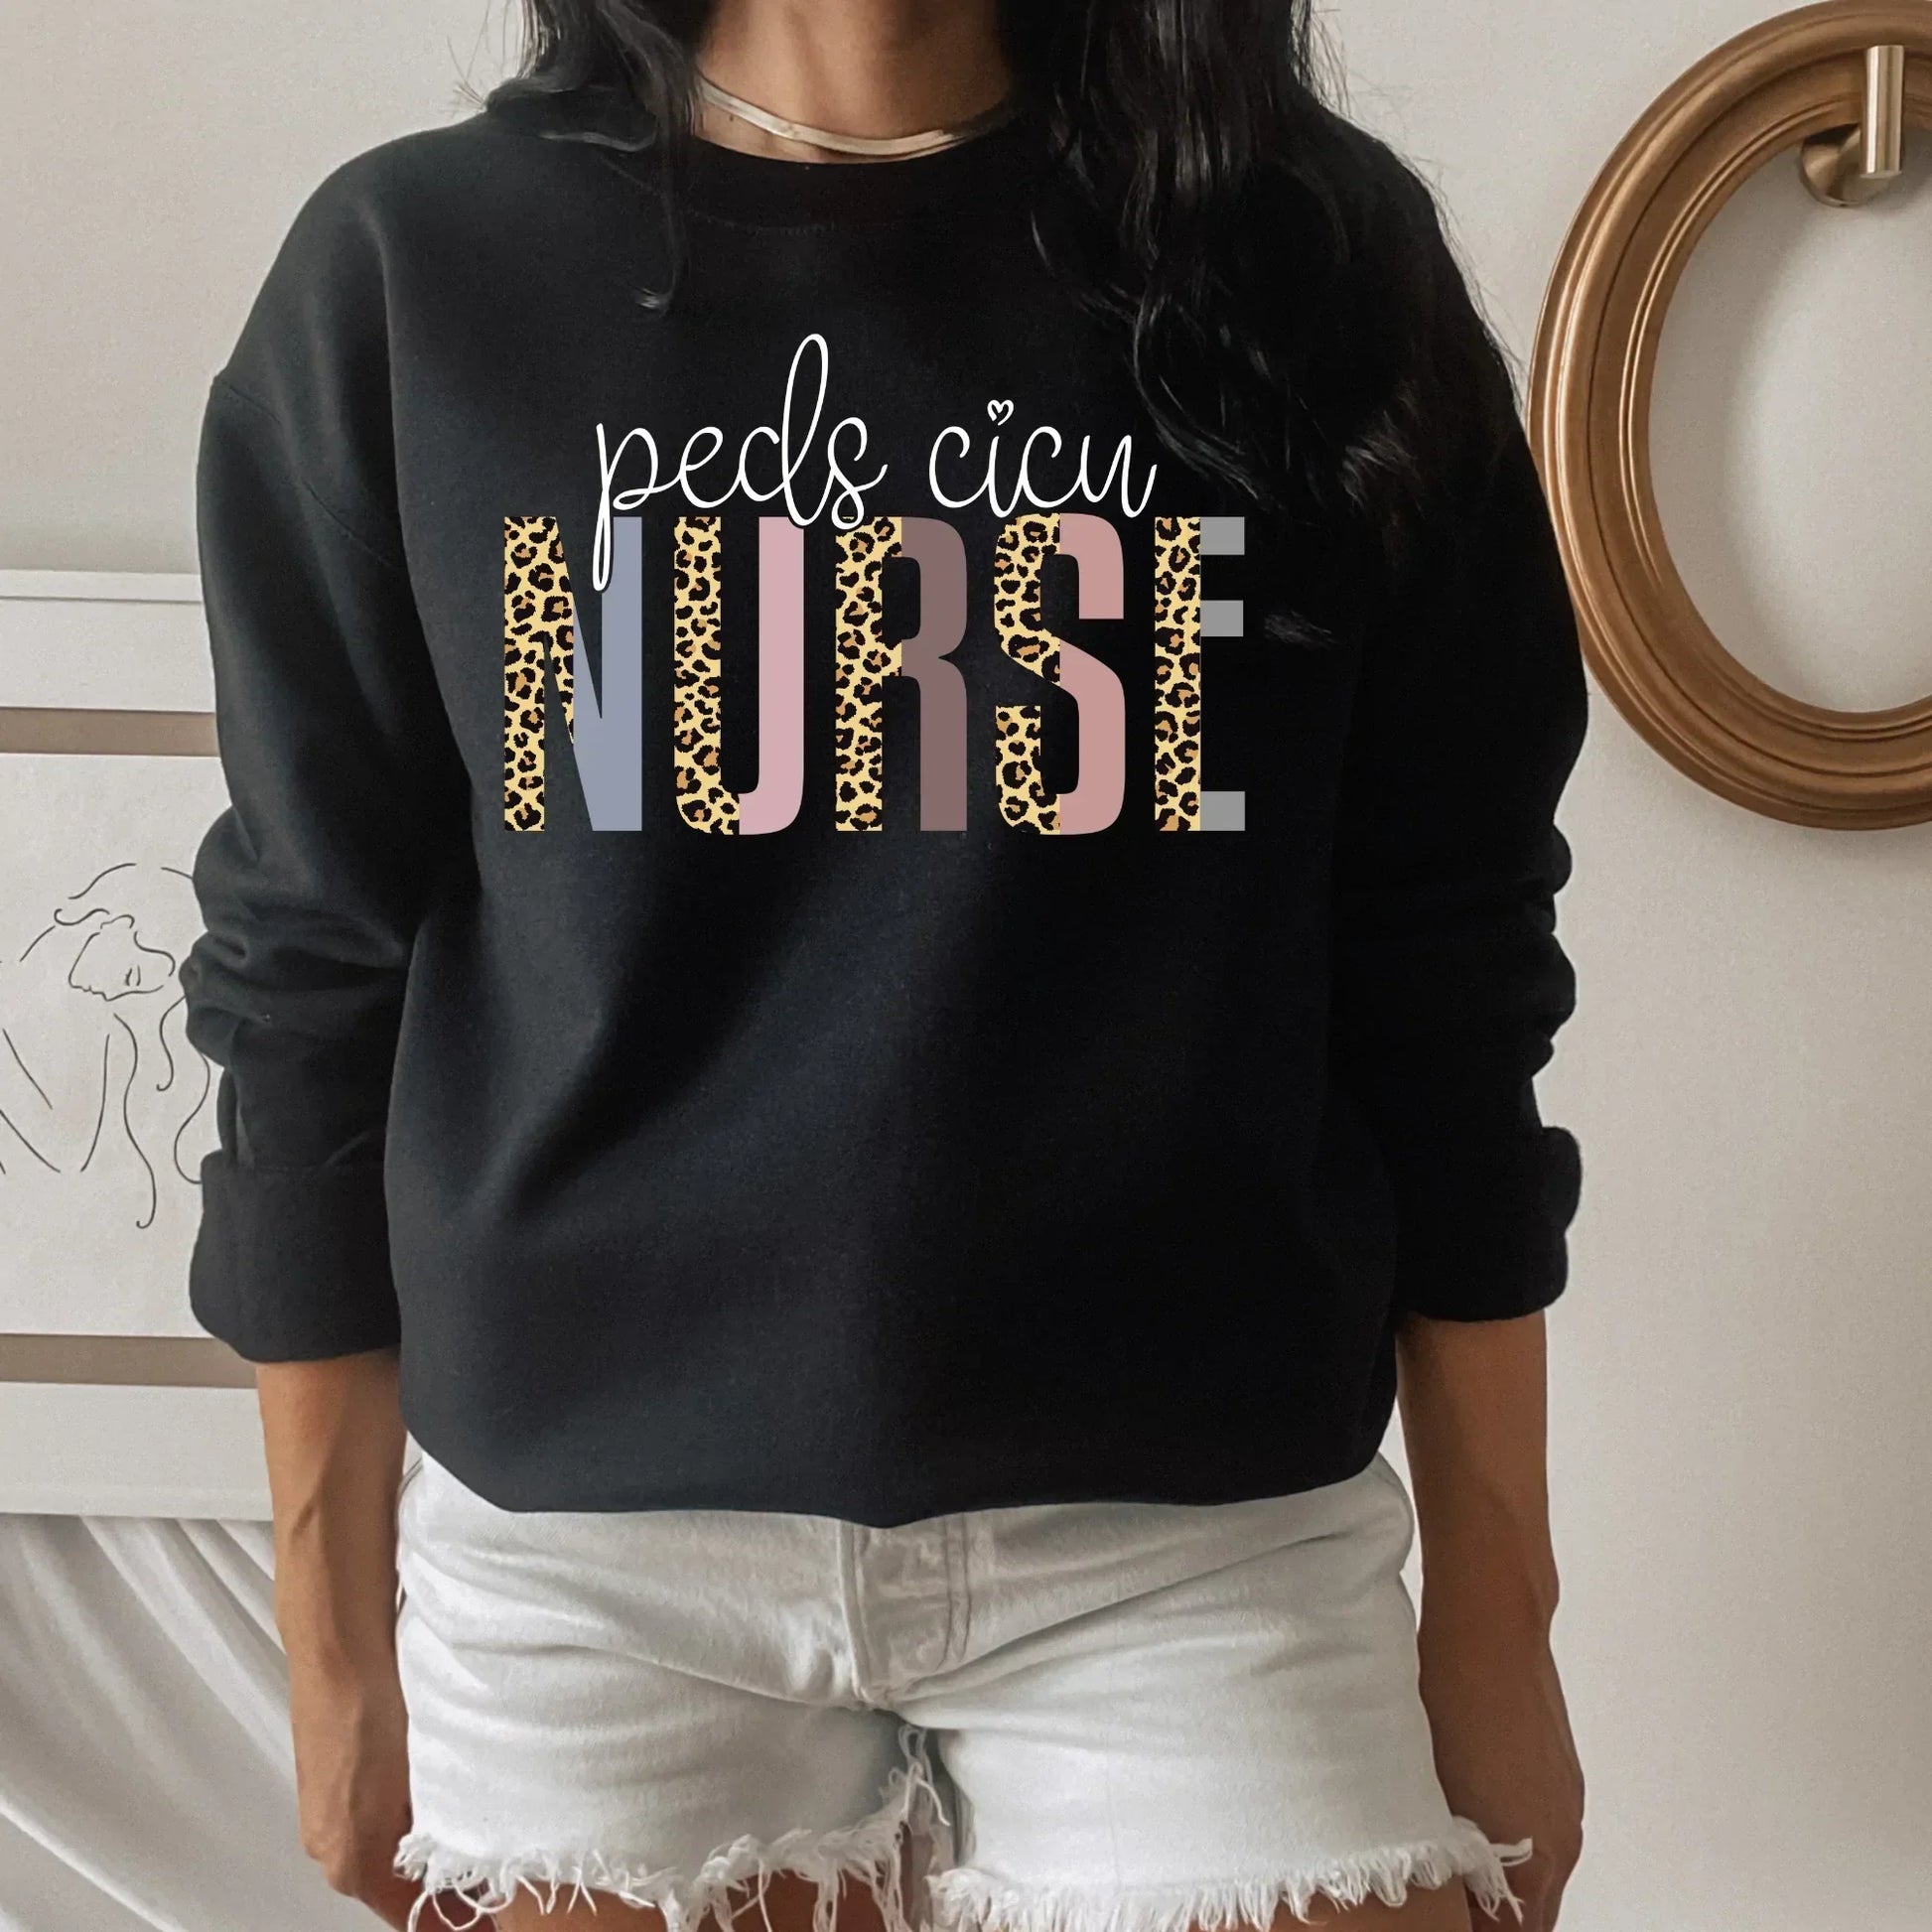 Pediatric Nurse Shirt, Peds Cicu Nurse, Pediatric Intensive Care Unit, Registered Nurse Shirt, Nurse practitioner Appreciation Gift, Nurse Life HMDesignStudioUS